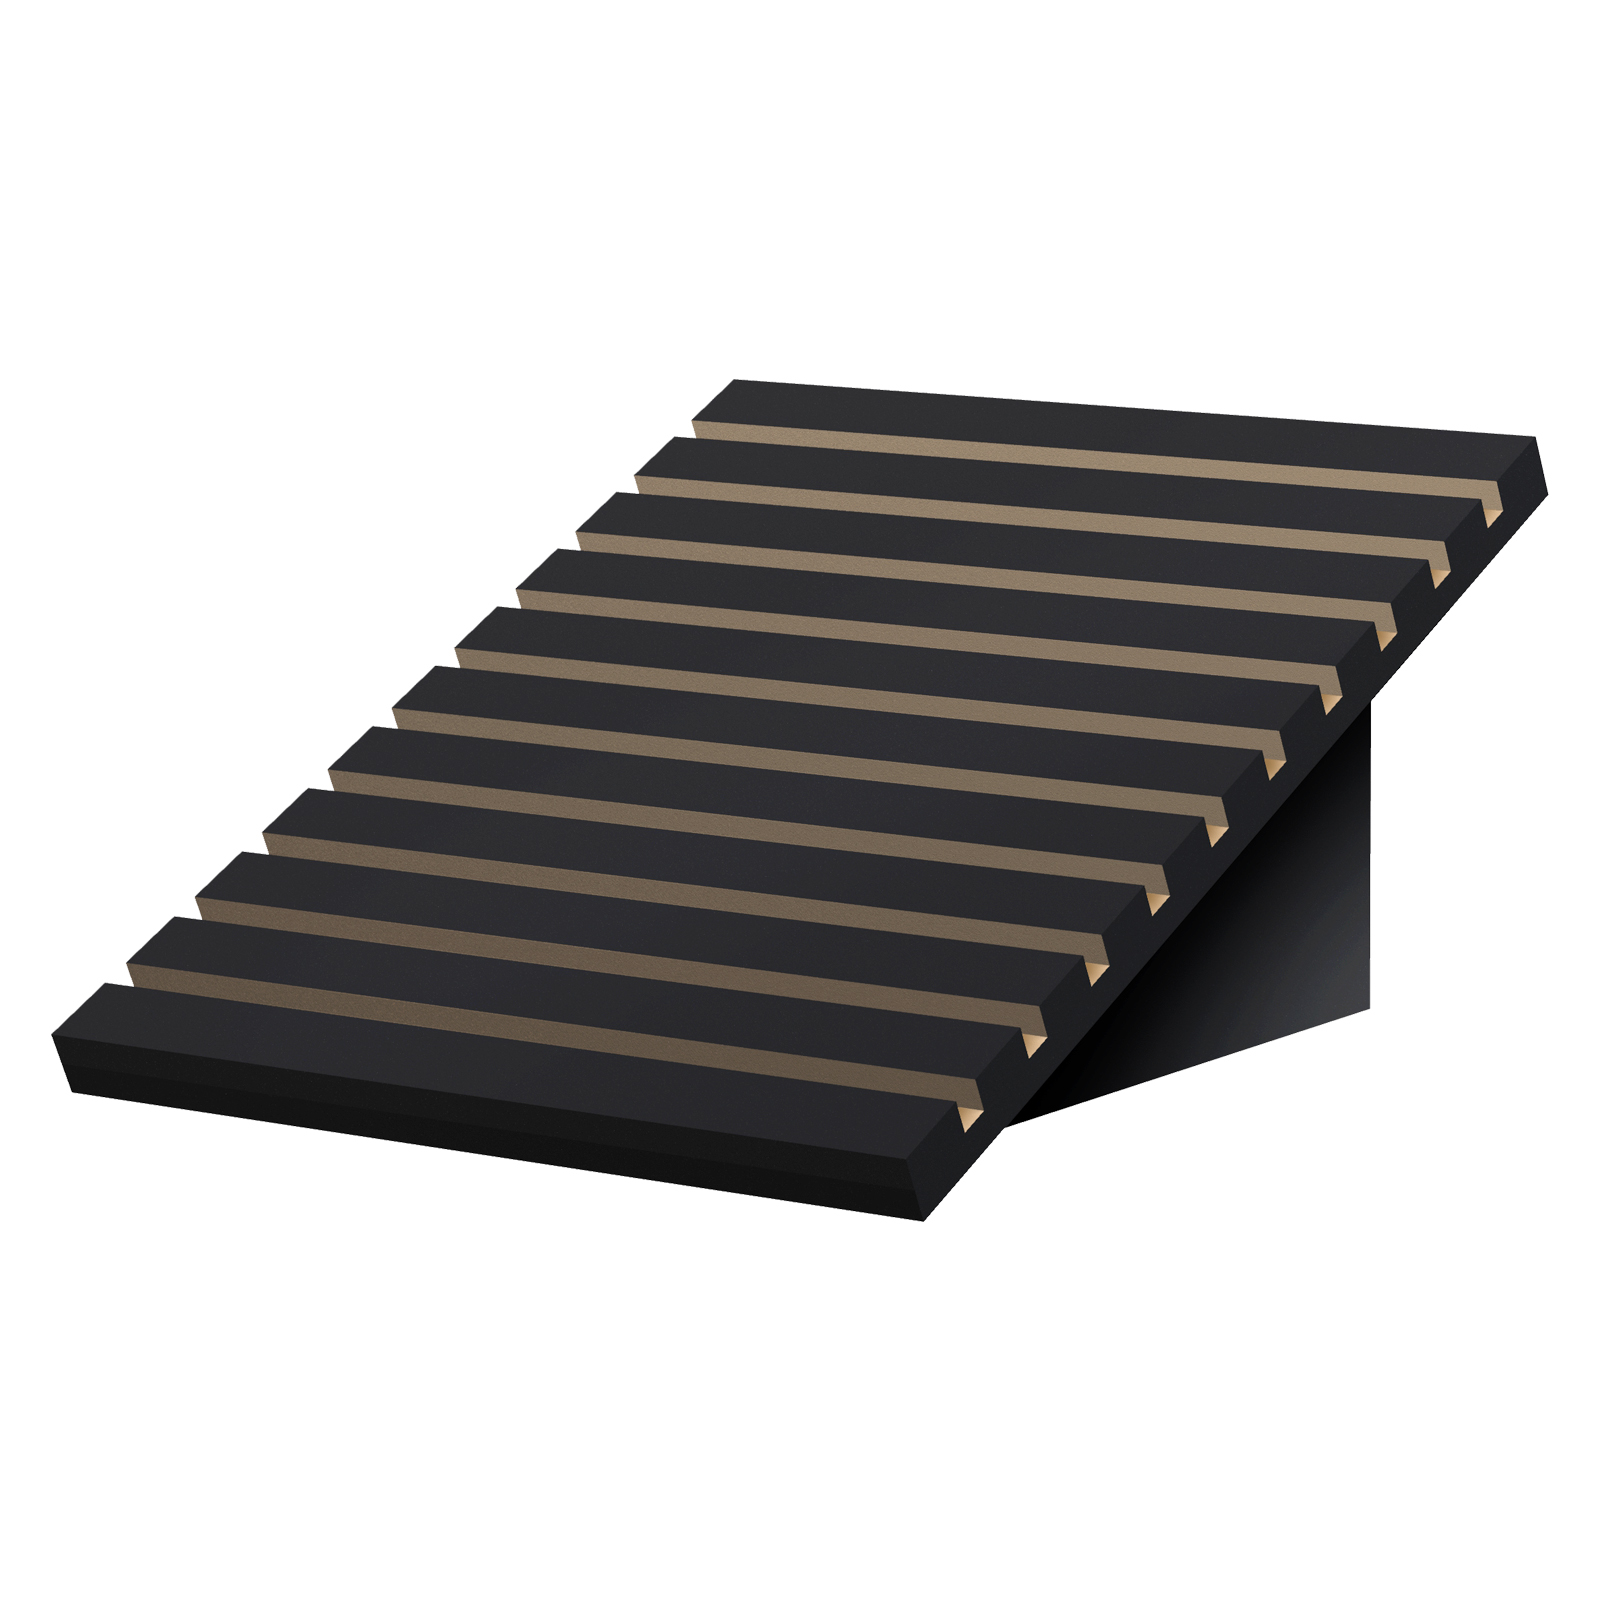 WB01 Tile Flooring Wedge Stock Displays Countertop Floor Plank Samples Showroom Display